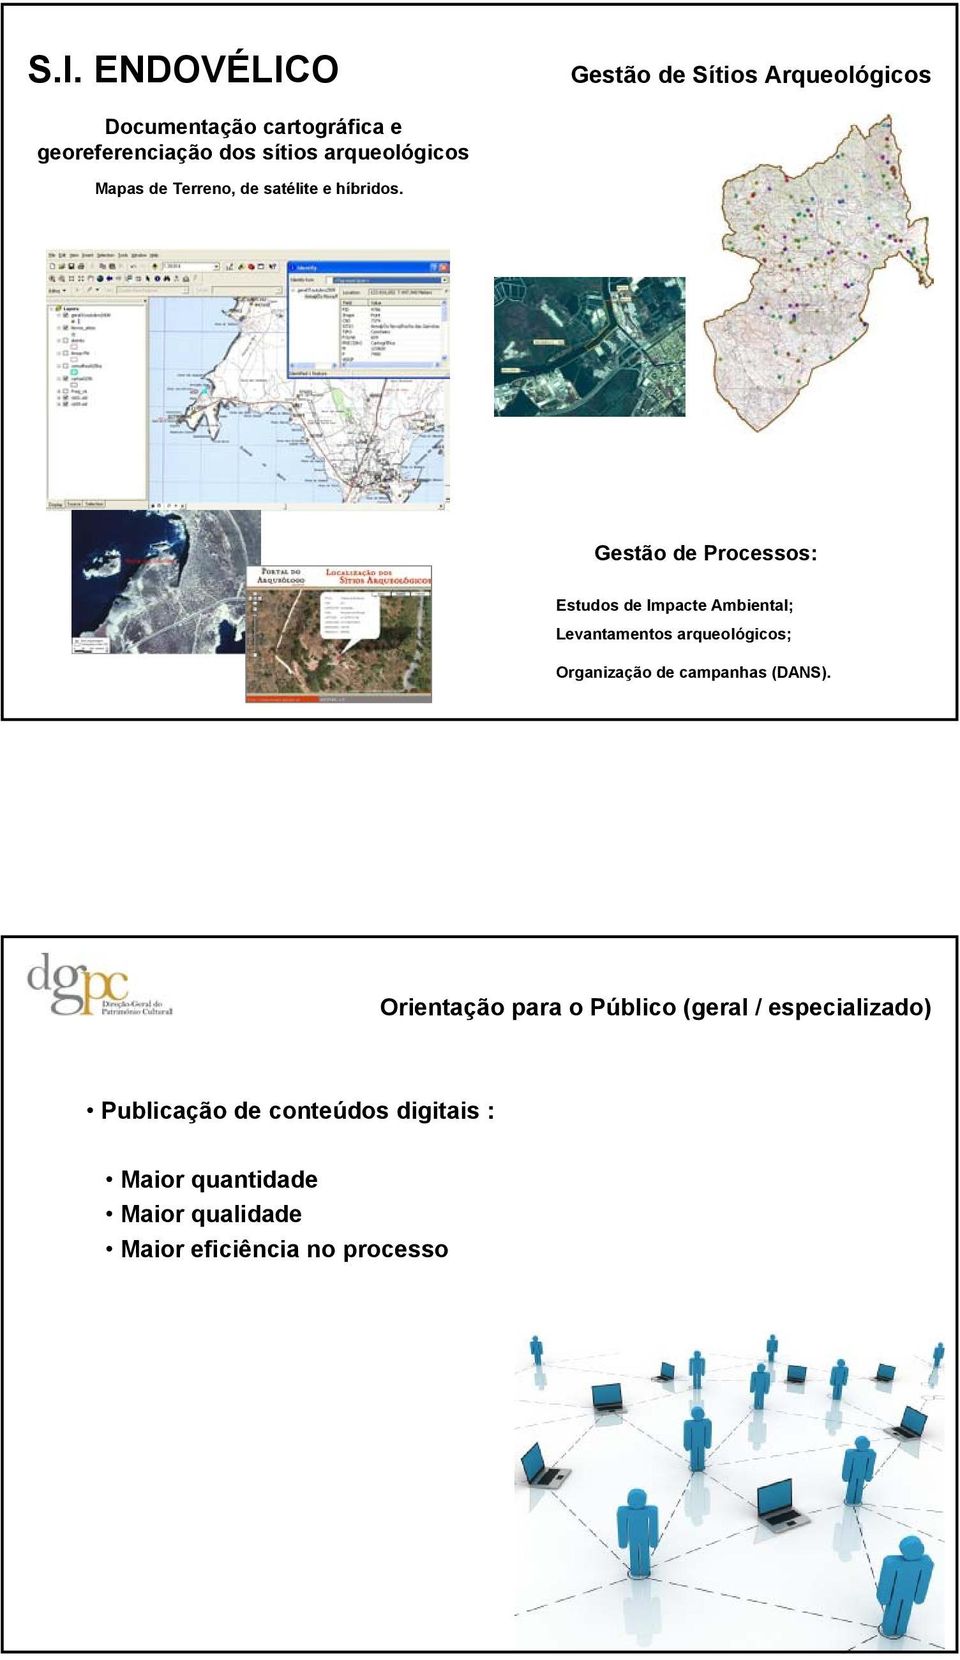 Gestão de Processos: Estudos de Impacte Ambiental; Levantamentos arqueológicos; Organização de campanhas